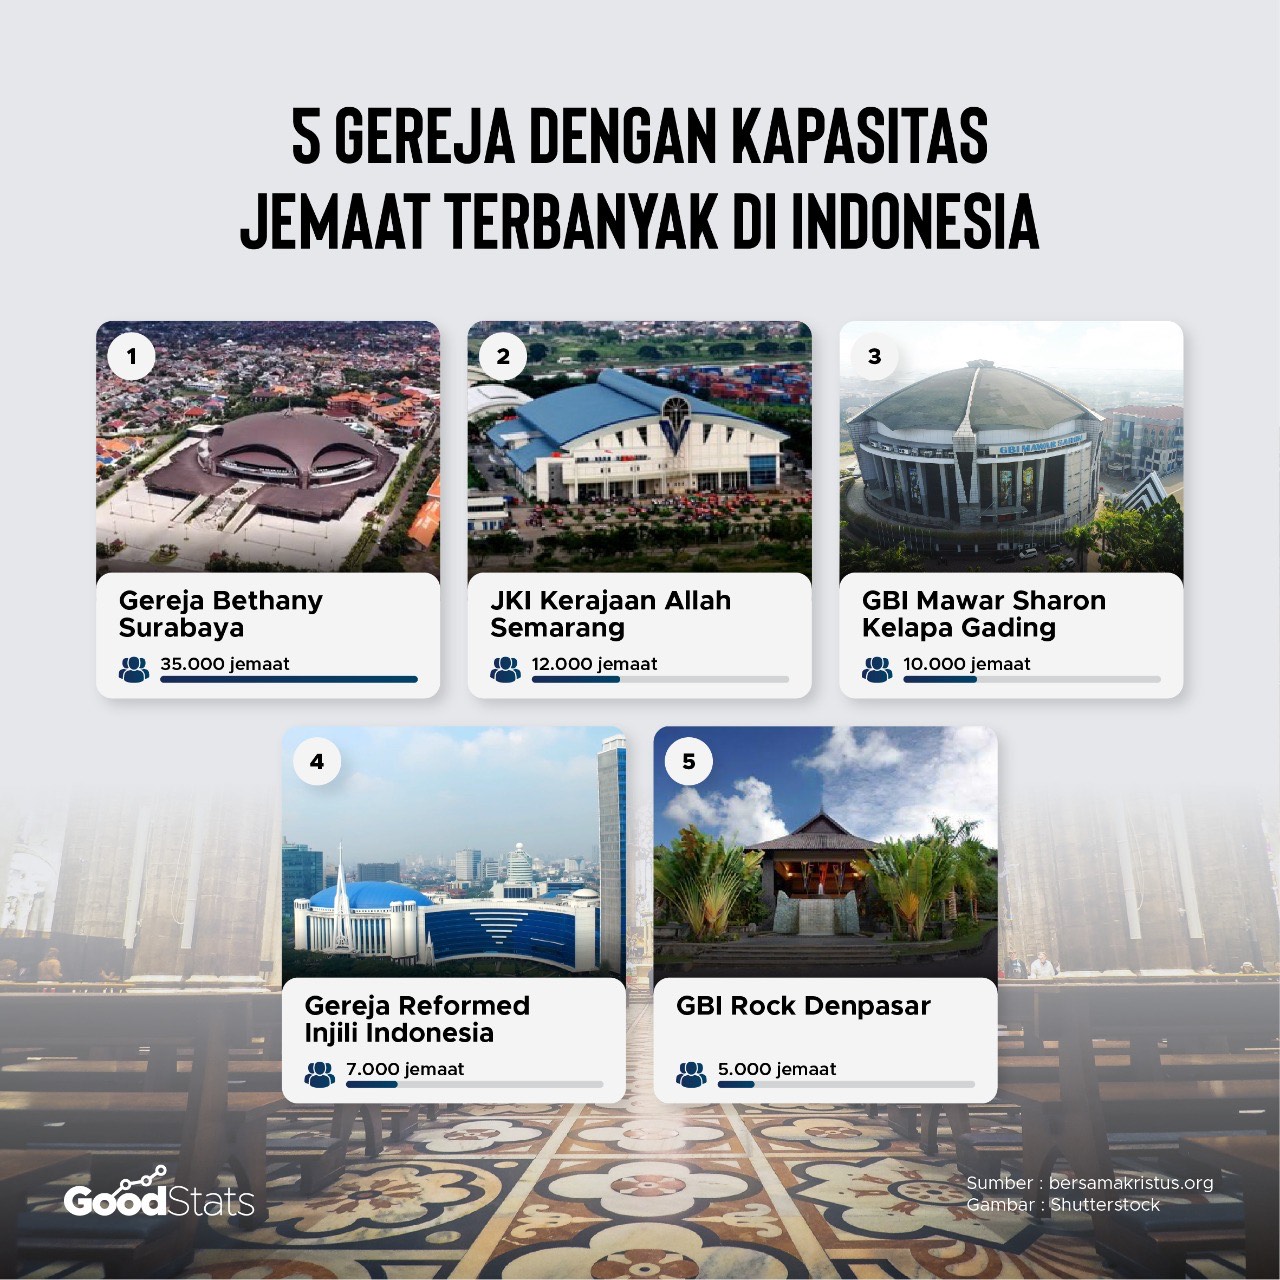 Gereja terbesar di Indonesia berdasarkan kapasitas jemaat 2021 © GoodStats